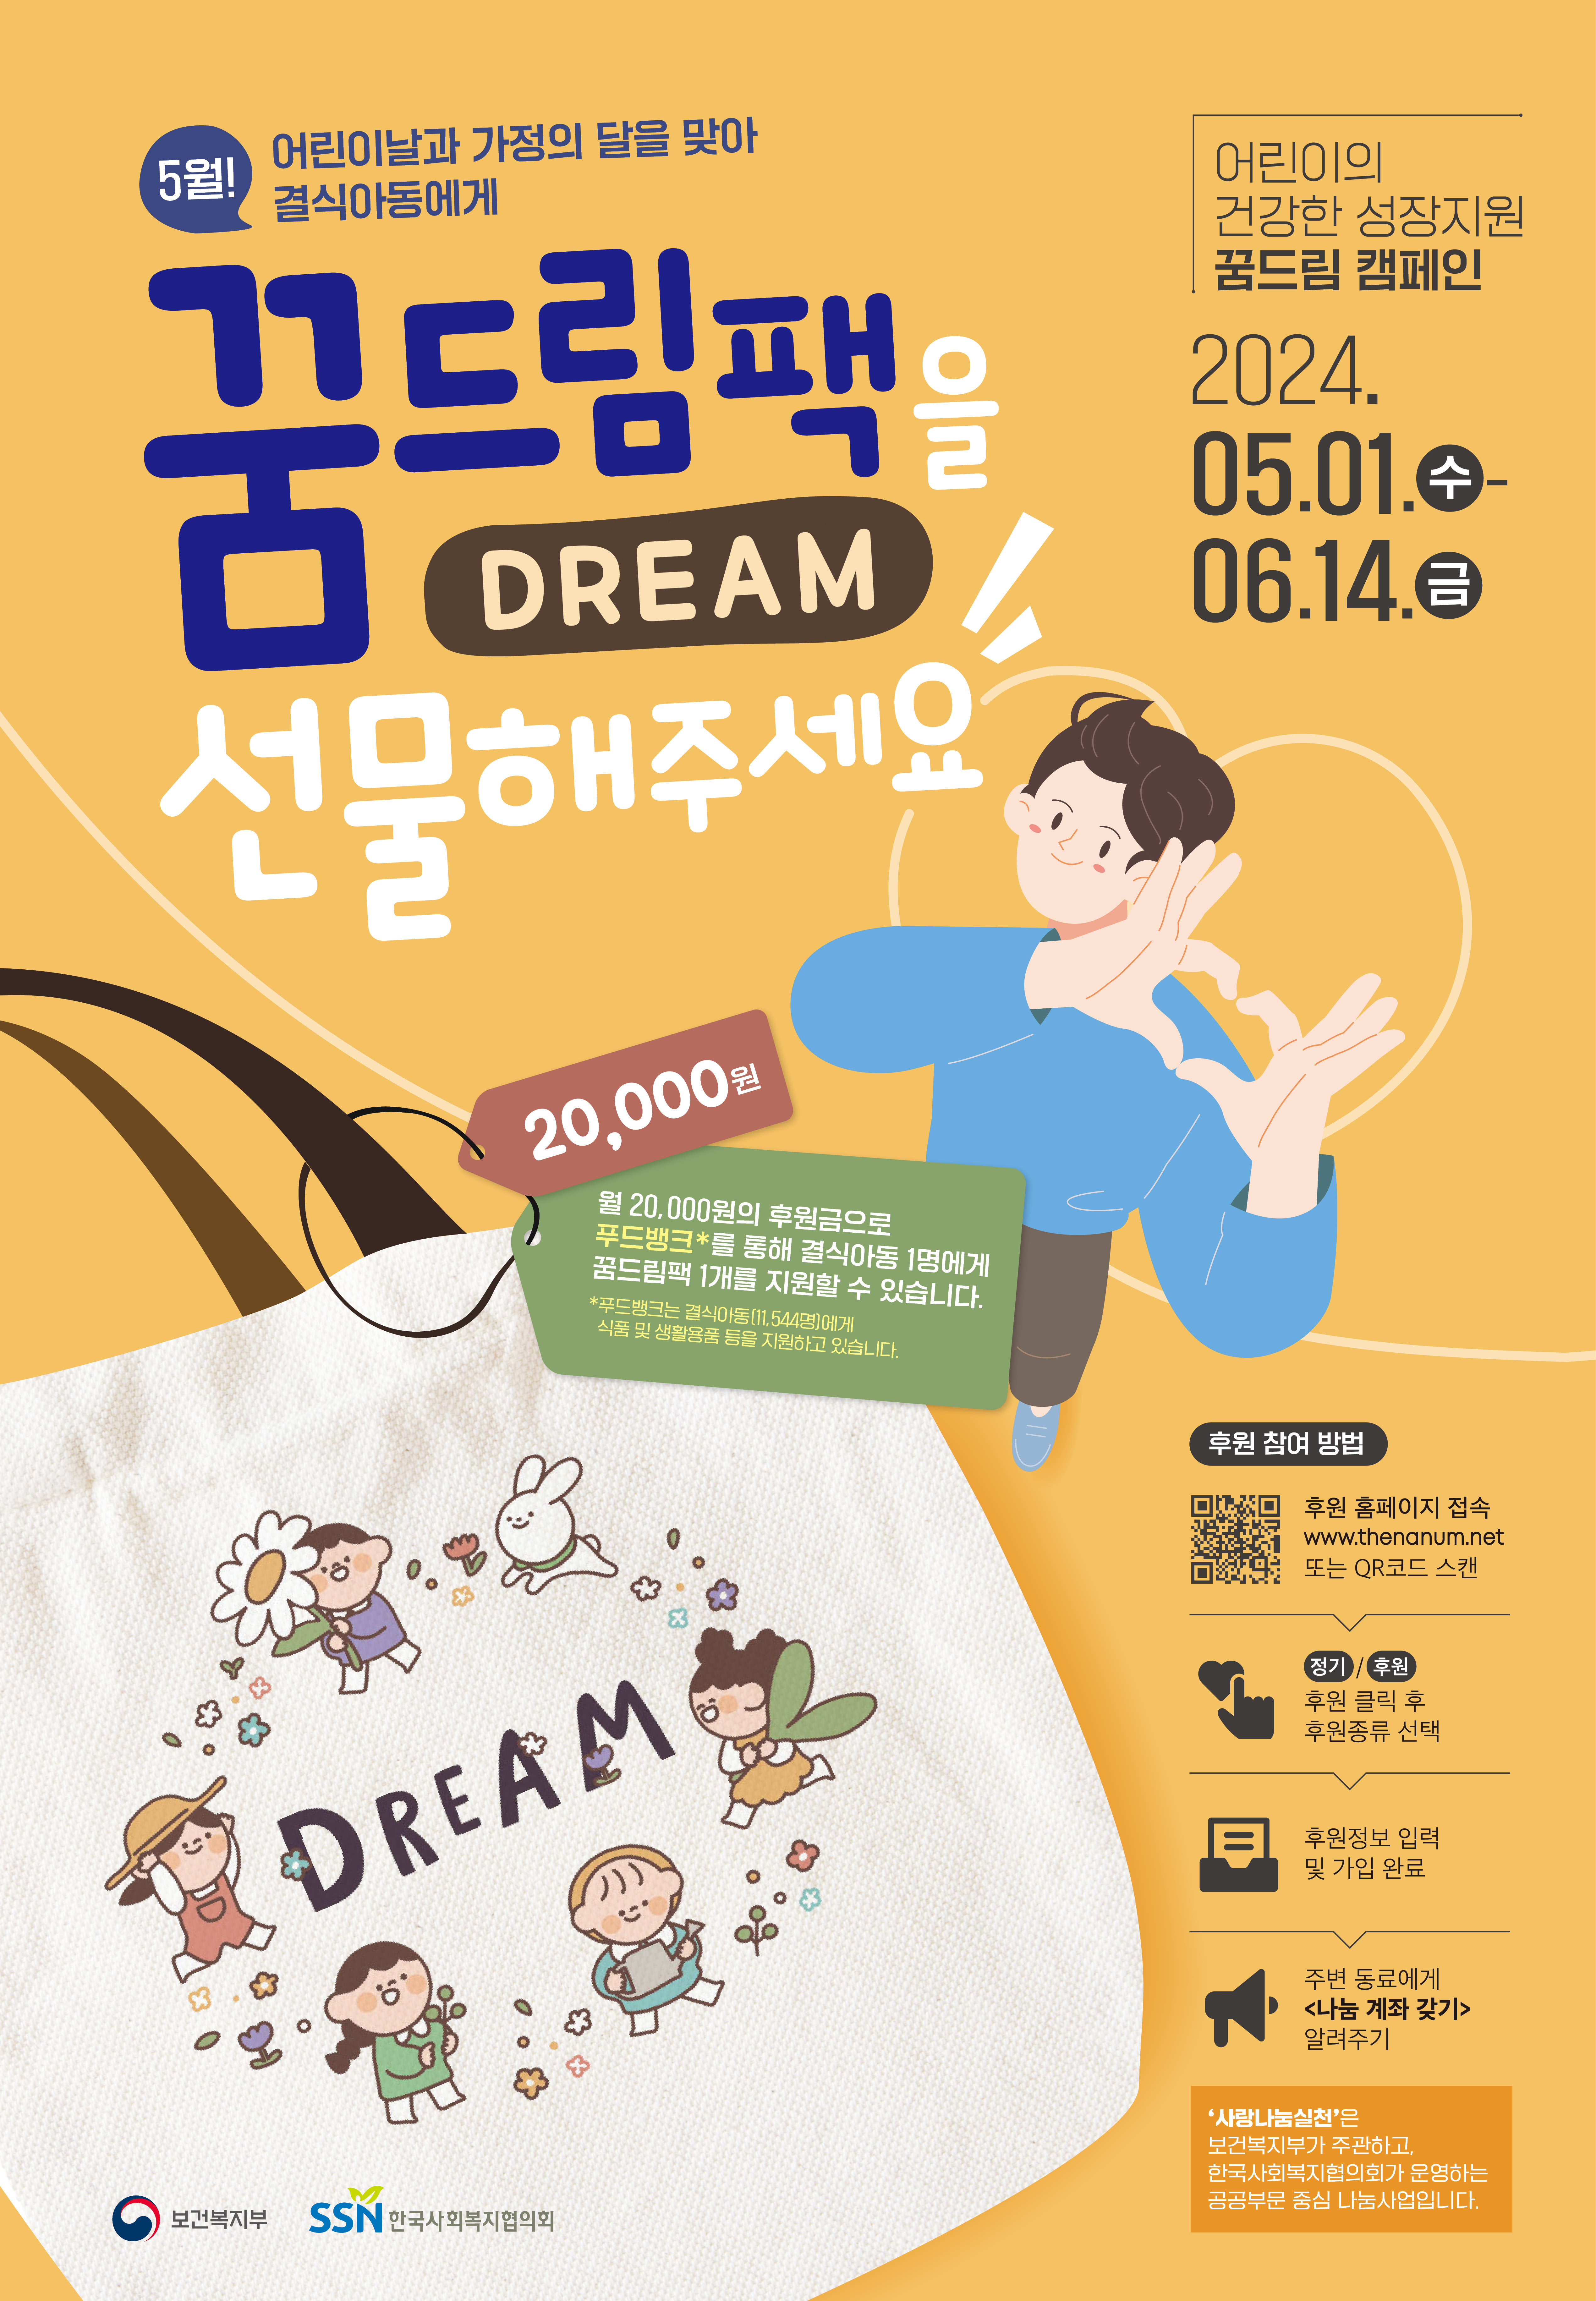 (붙임2) 꿈드림 캠페인 포스터